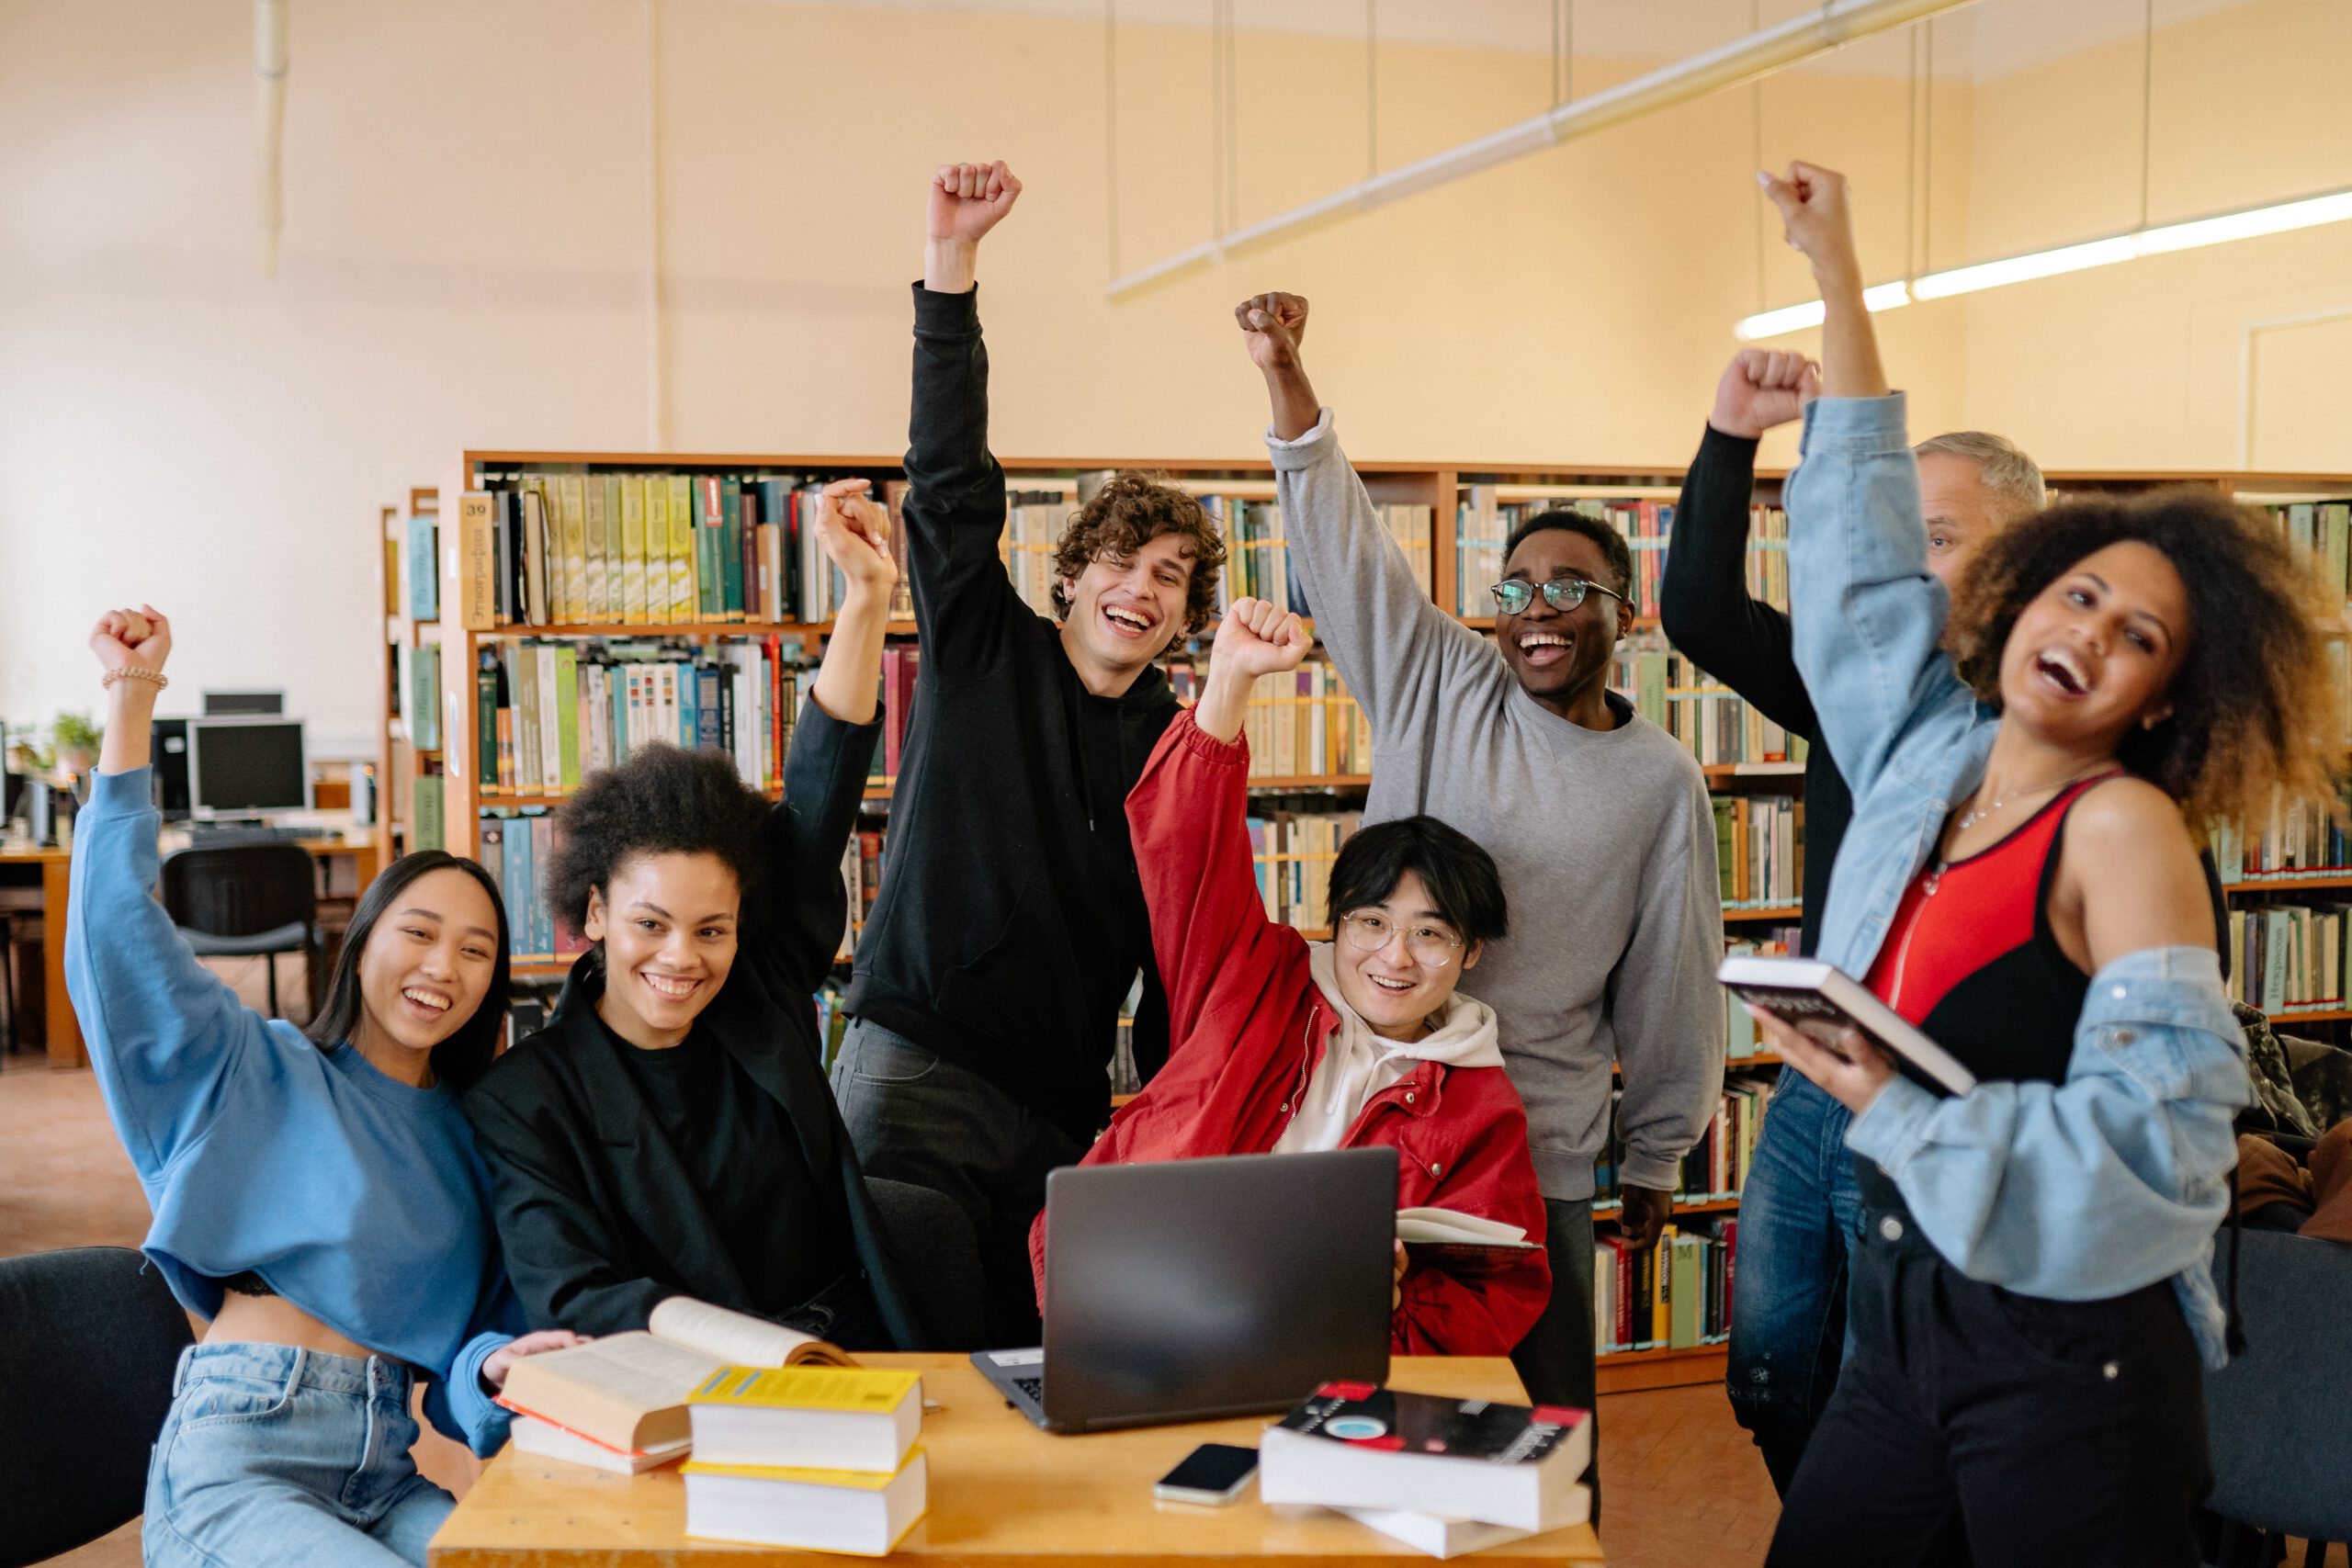 Grupa studentów w bibliotece podnosząca pięści do góry w geście zwycięstwa z uśmiechami na twarzach